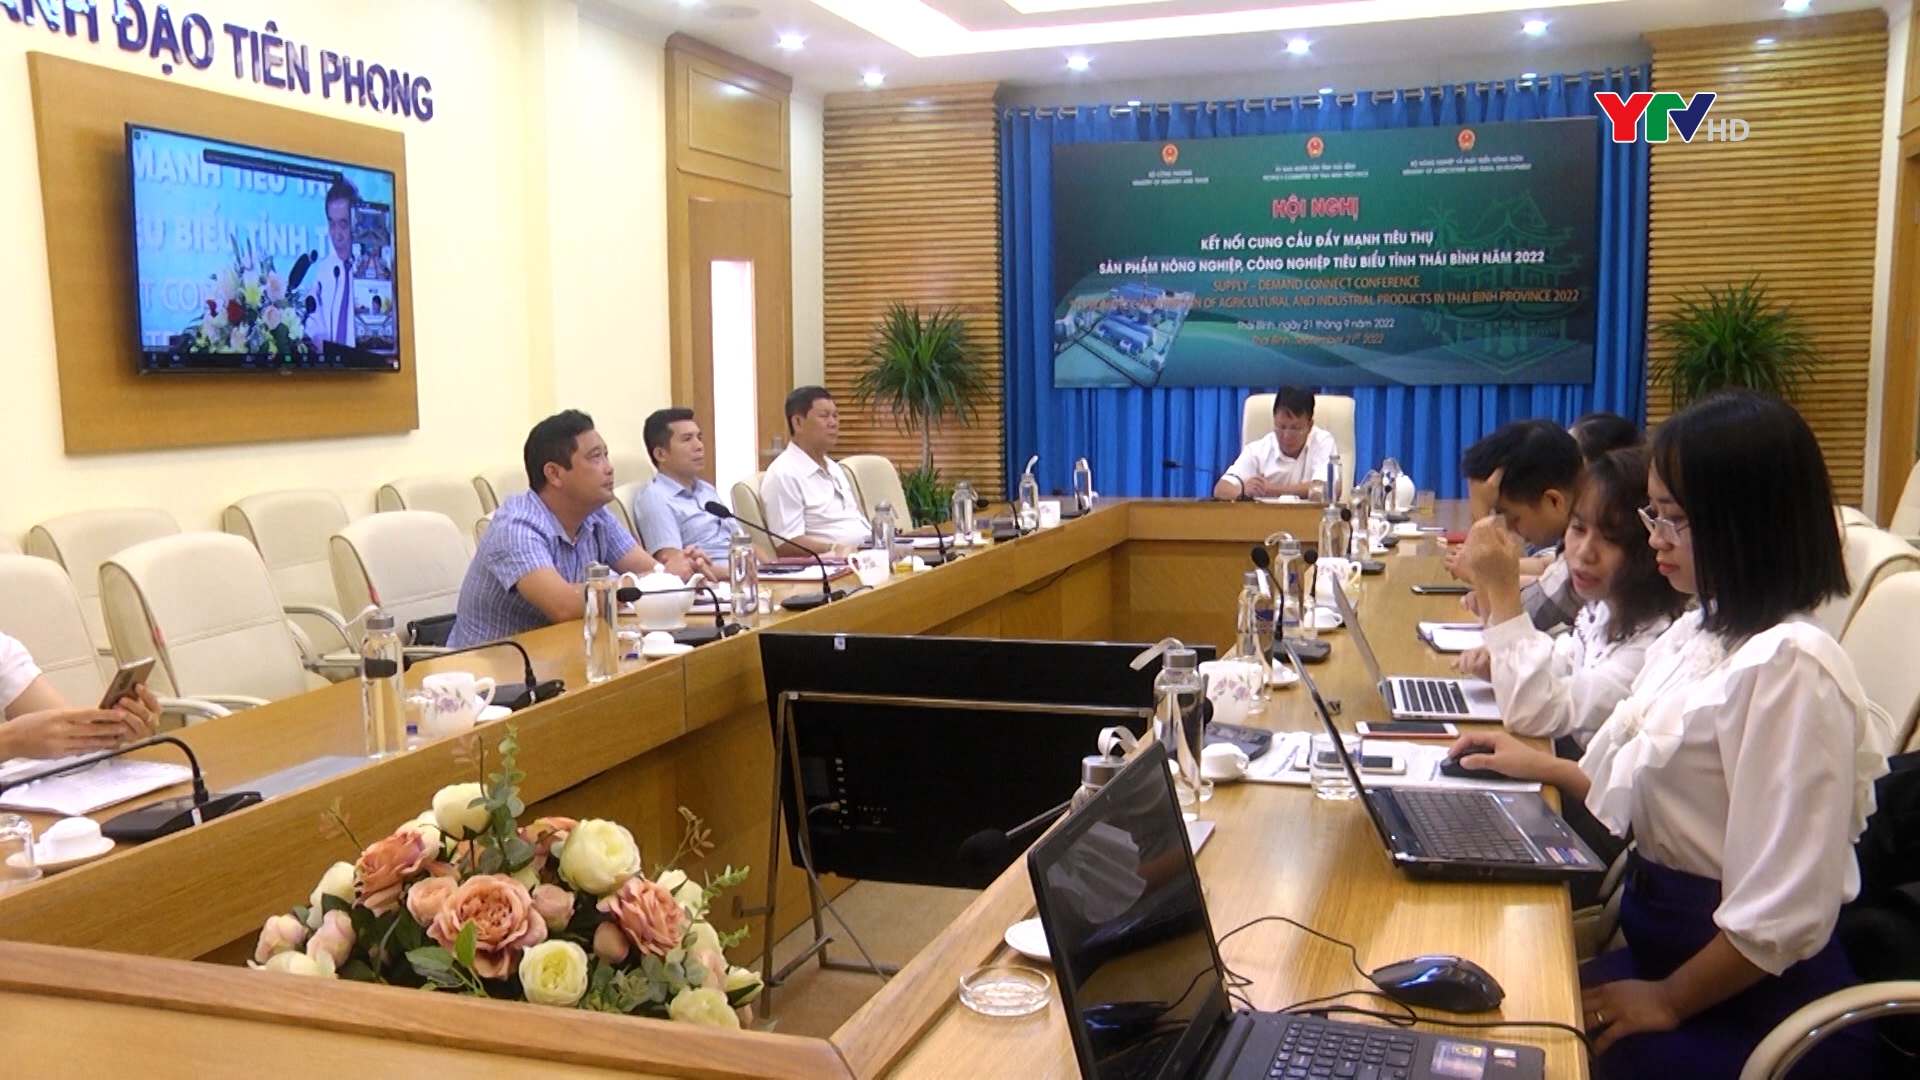 Yên Bái tham dự Hội nghị kết nối cung cầu đẩy mạnh tiêu thụ sản phẩm nông nghiệp, công nghiệp tiêu biểu tỉnh Thái Bình năm 2022